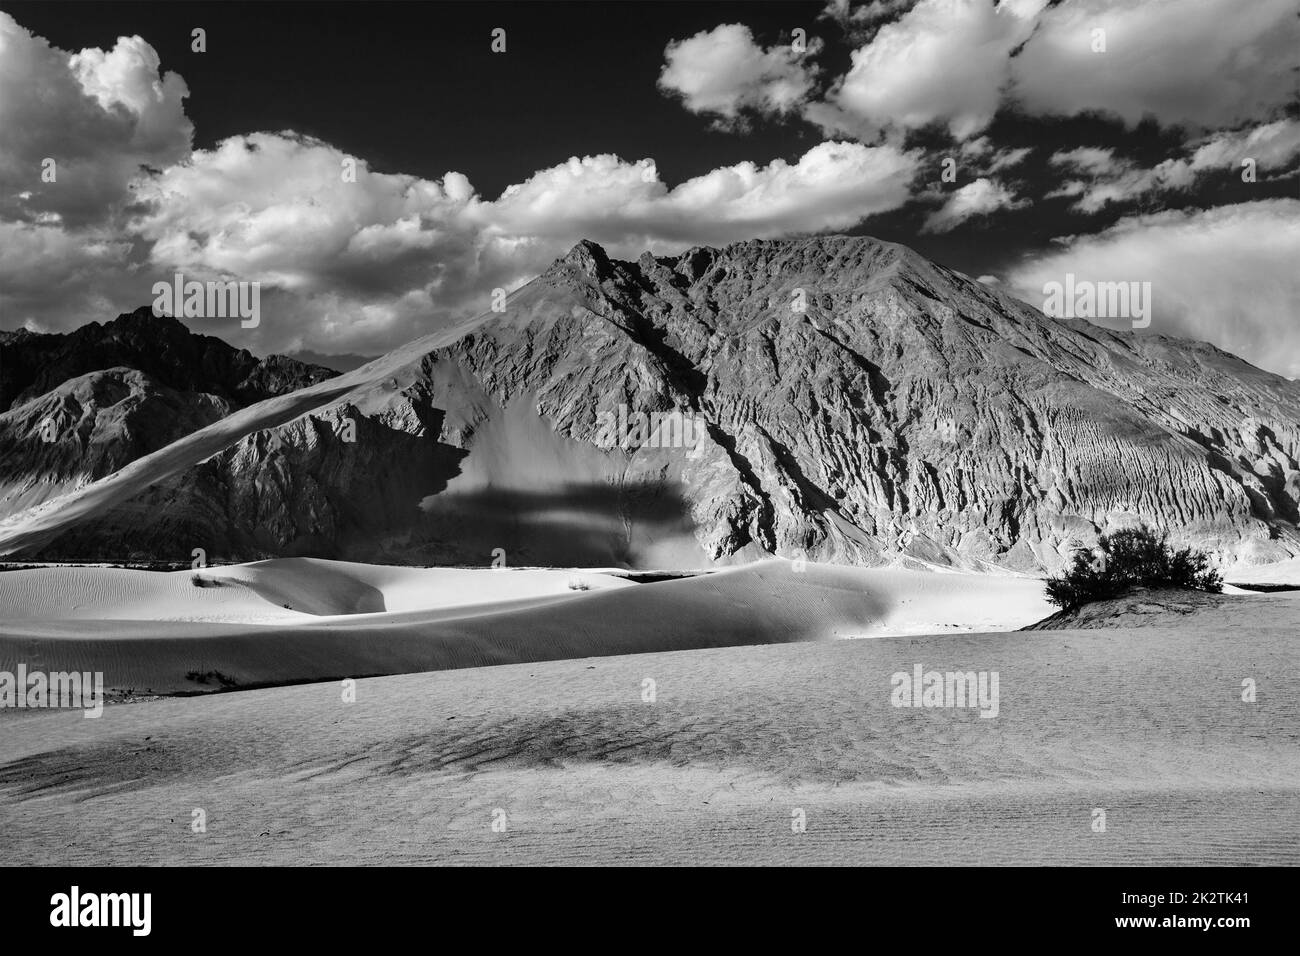 Les dunes de sable. La vallée de Nubra, Ladakh, Inde Banque D'Images